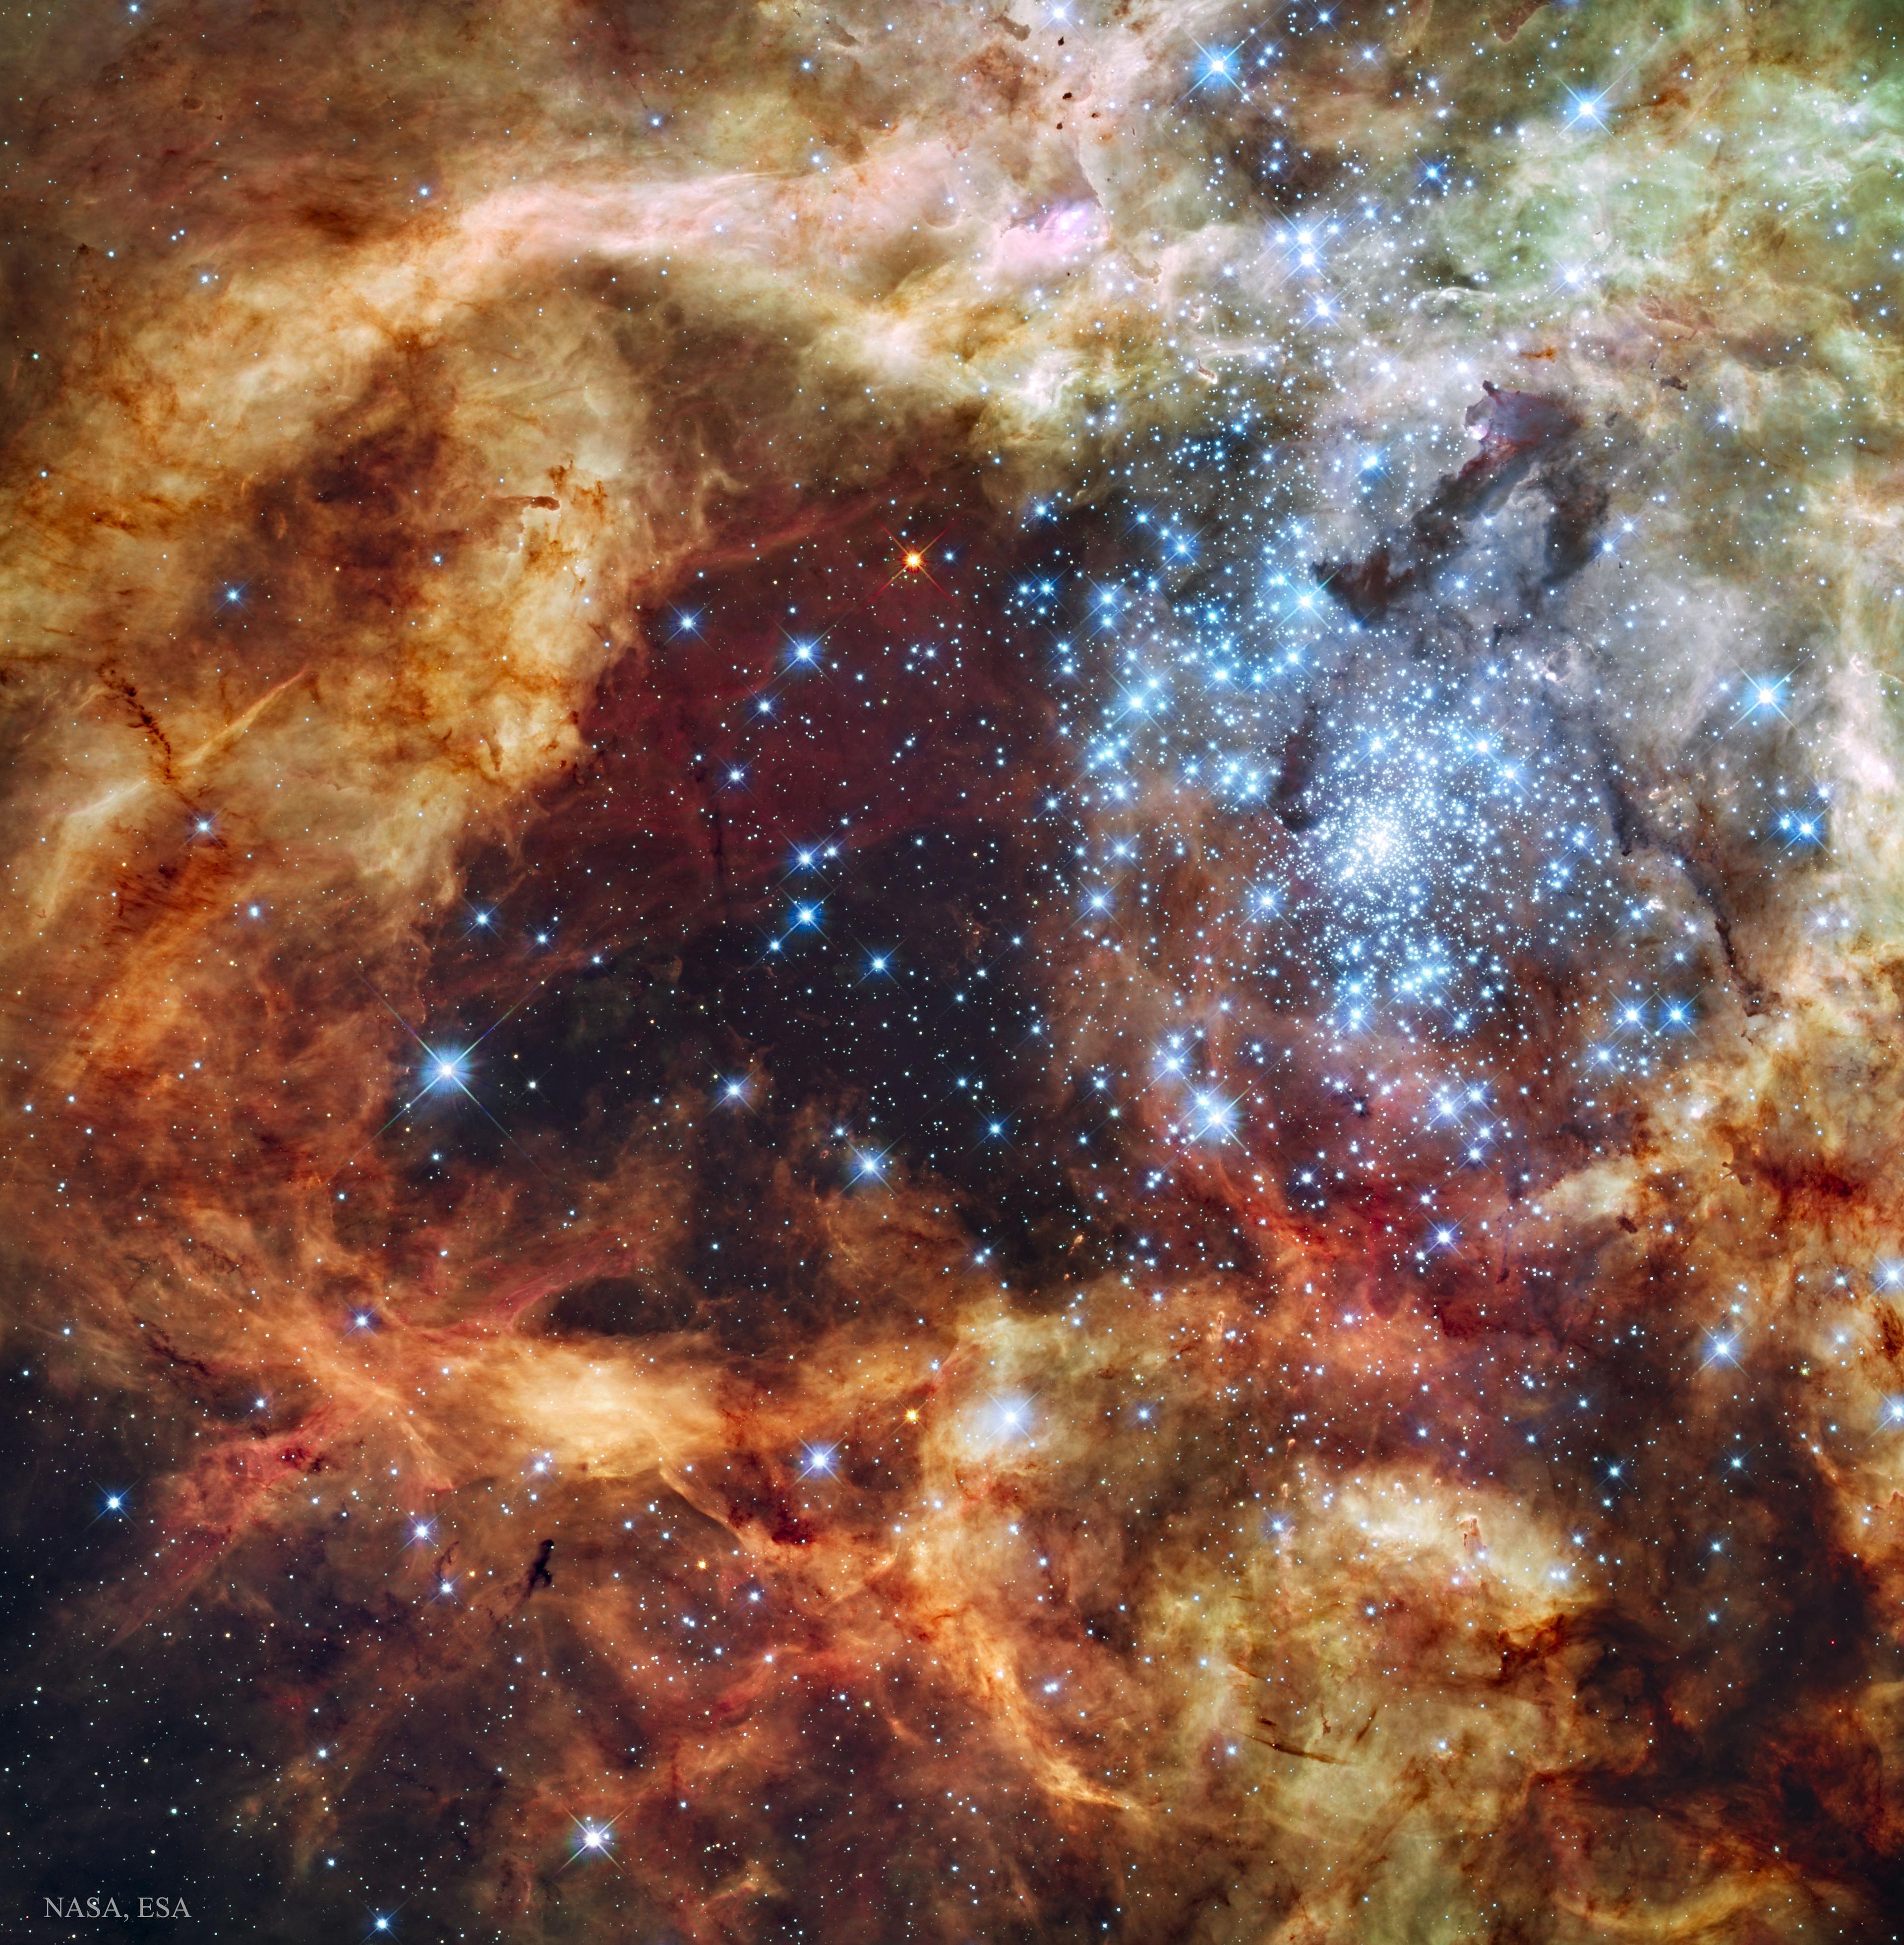 صورة مميزة بالضوء المرئي لسديم العنكبوت. سُحُب الغاز والغبار في سديم العنكبوت منحوتة بأشكال ممدودة بفعل الرياح القوية والأشعة فوق البنفسجية الصادرة عن هذه النجوم التي تعتبر من بين أكبر النجوم المعروفة وأشدّها سخونة وأعظمها كتلة. عنقود النجوم تركيزه الأكبر في يمين وسط الصورة وتتباعد النجوم ذات اللون الأبيض المزرقّ كلما ابتعدنا عن تلك النقطة حيث تظهر السحب السديمية بألوان متدرجة بين حمراء وبنية وبرتقالية وصفراء.